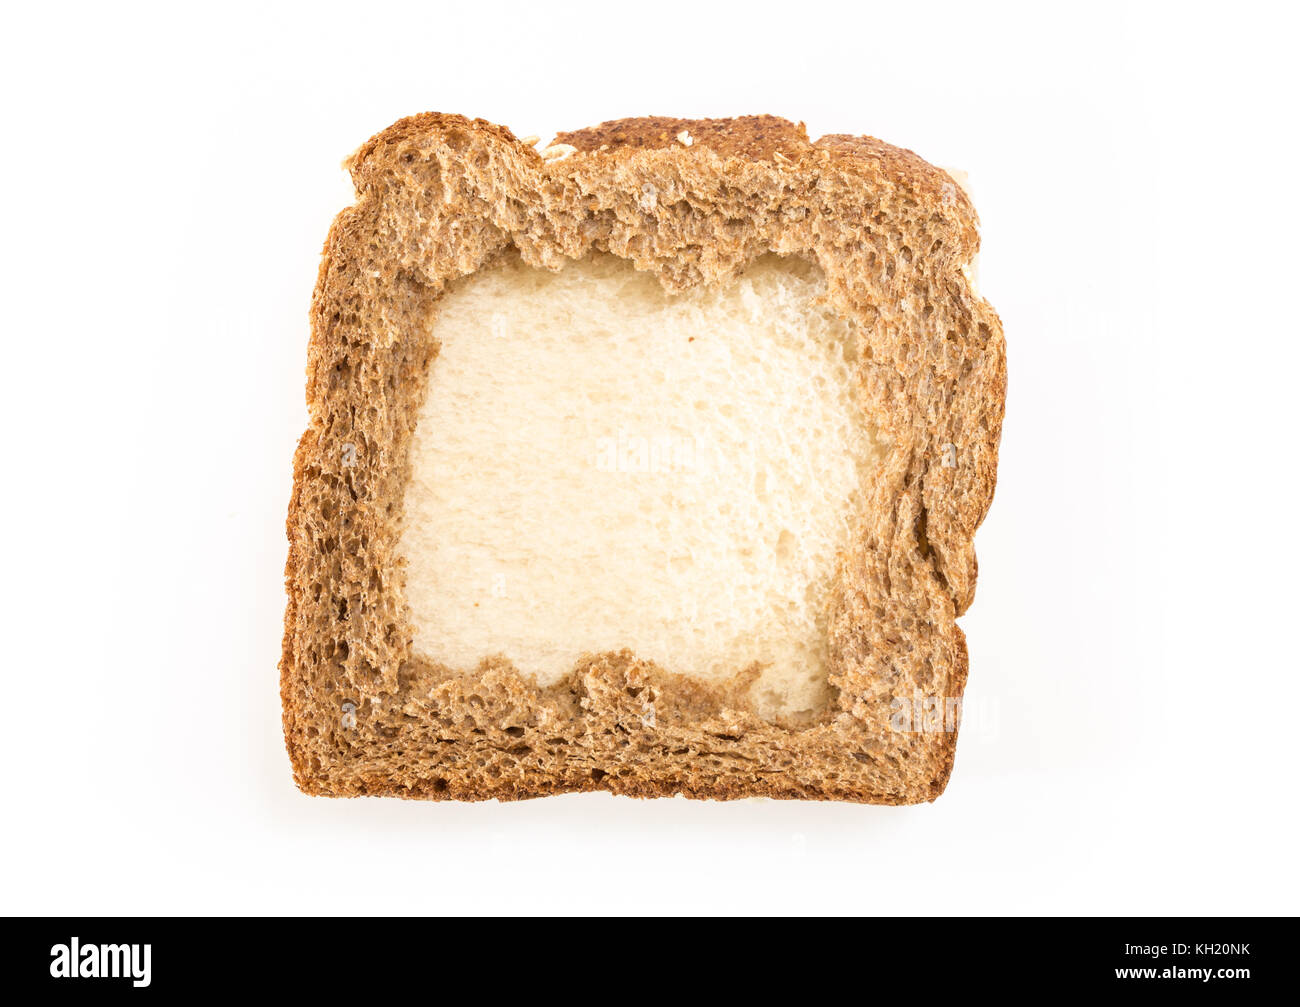 Sandwich Scheiben Brot mit Loch, auf weißem Hintergrund Stockfotografie -  Alamy